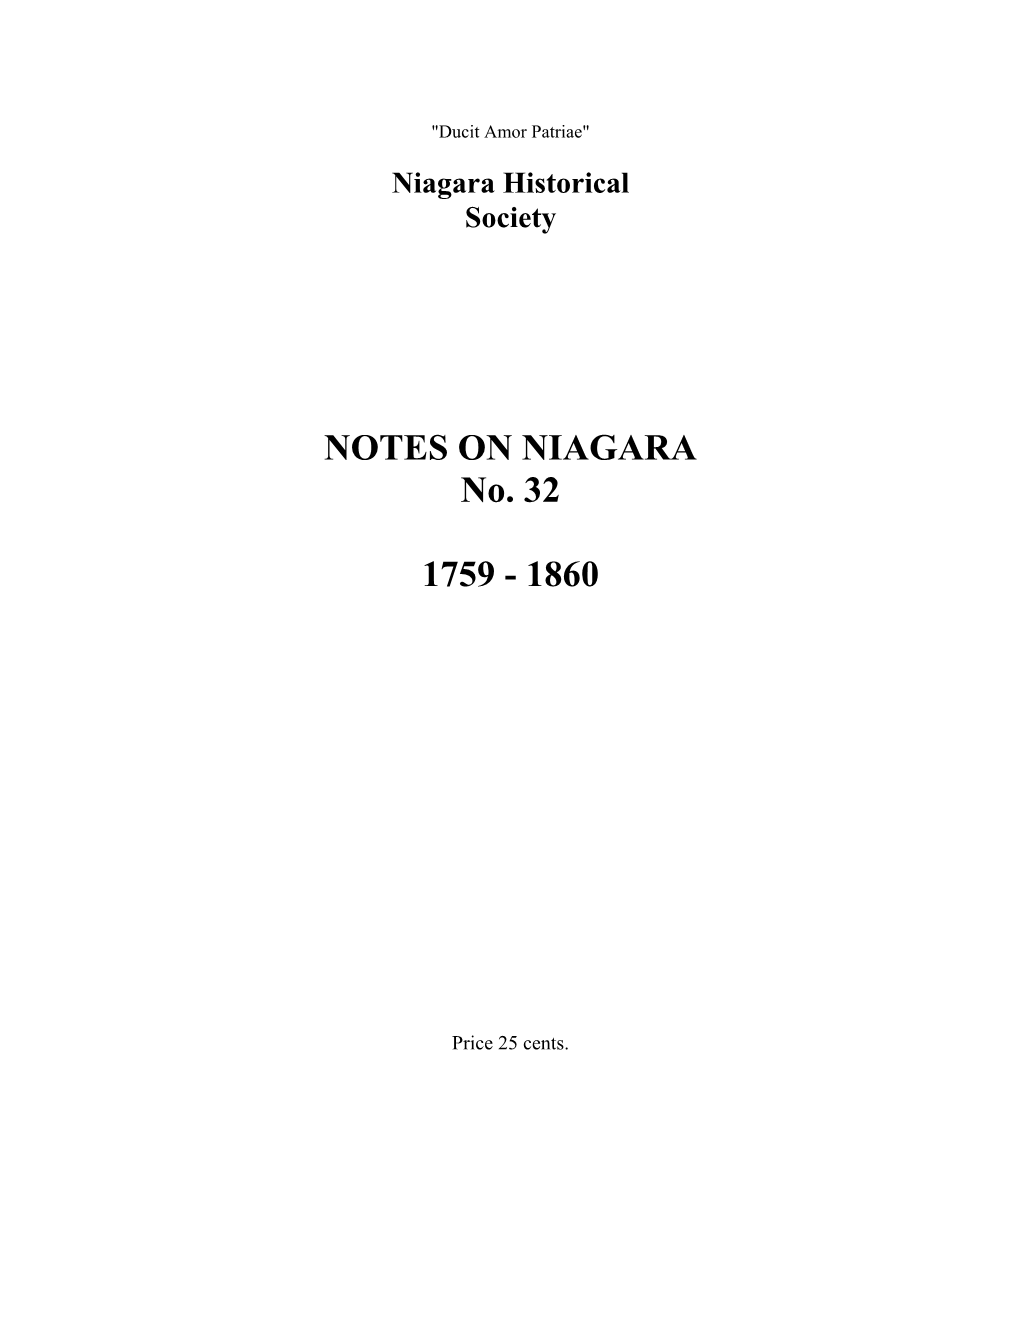 NOTES on NIAGARA No. 32 1759